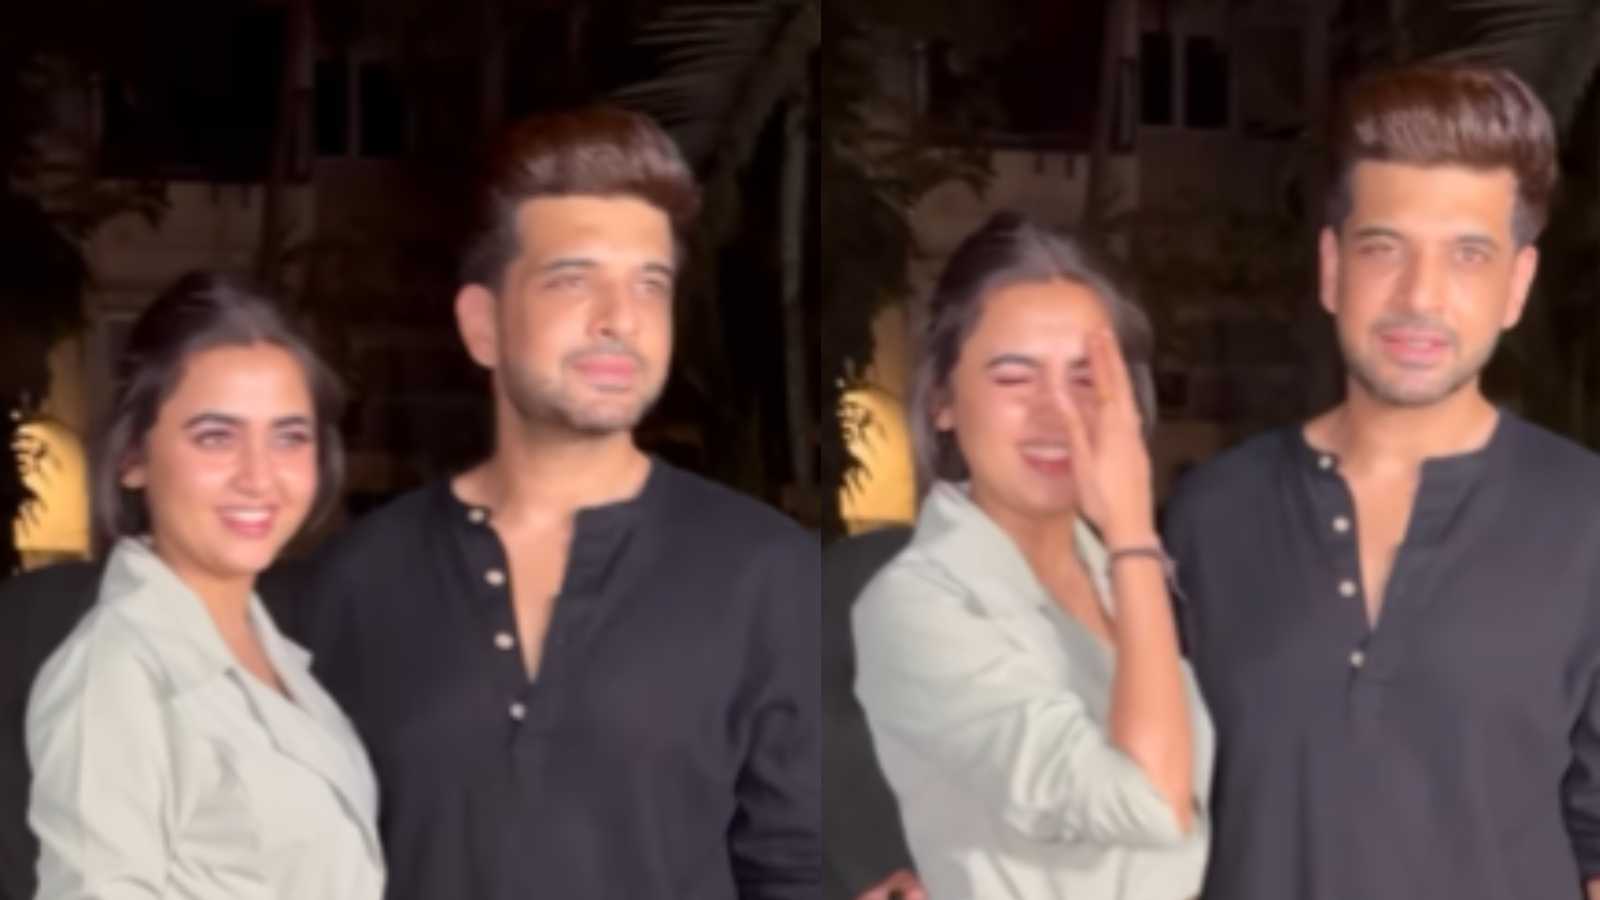 'Sidnaaz nahi ban sakte kabhi' : Netizens react to Karan Kundrra and Tejasswi Prakash sneaking out for a date night